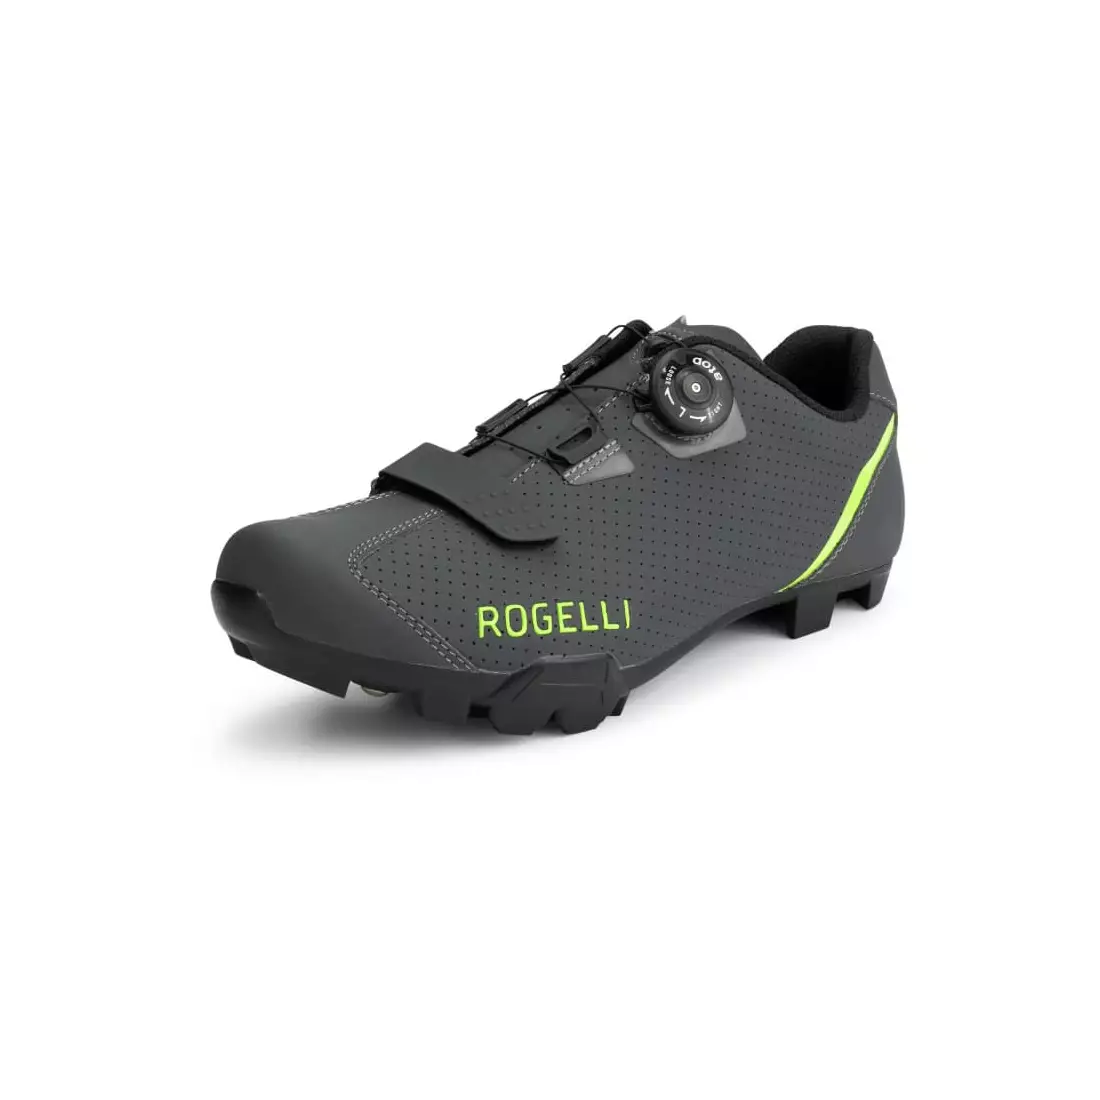 Rogelli MTB R400X férfi MTB kerékpáros cipő, szürke-fluorsárga